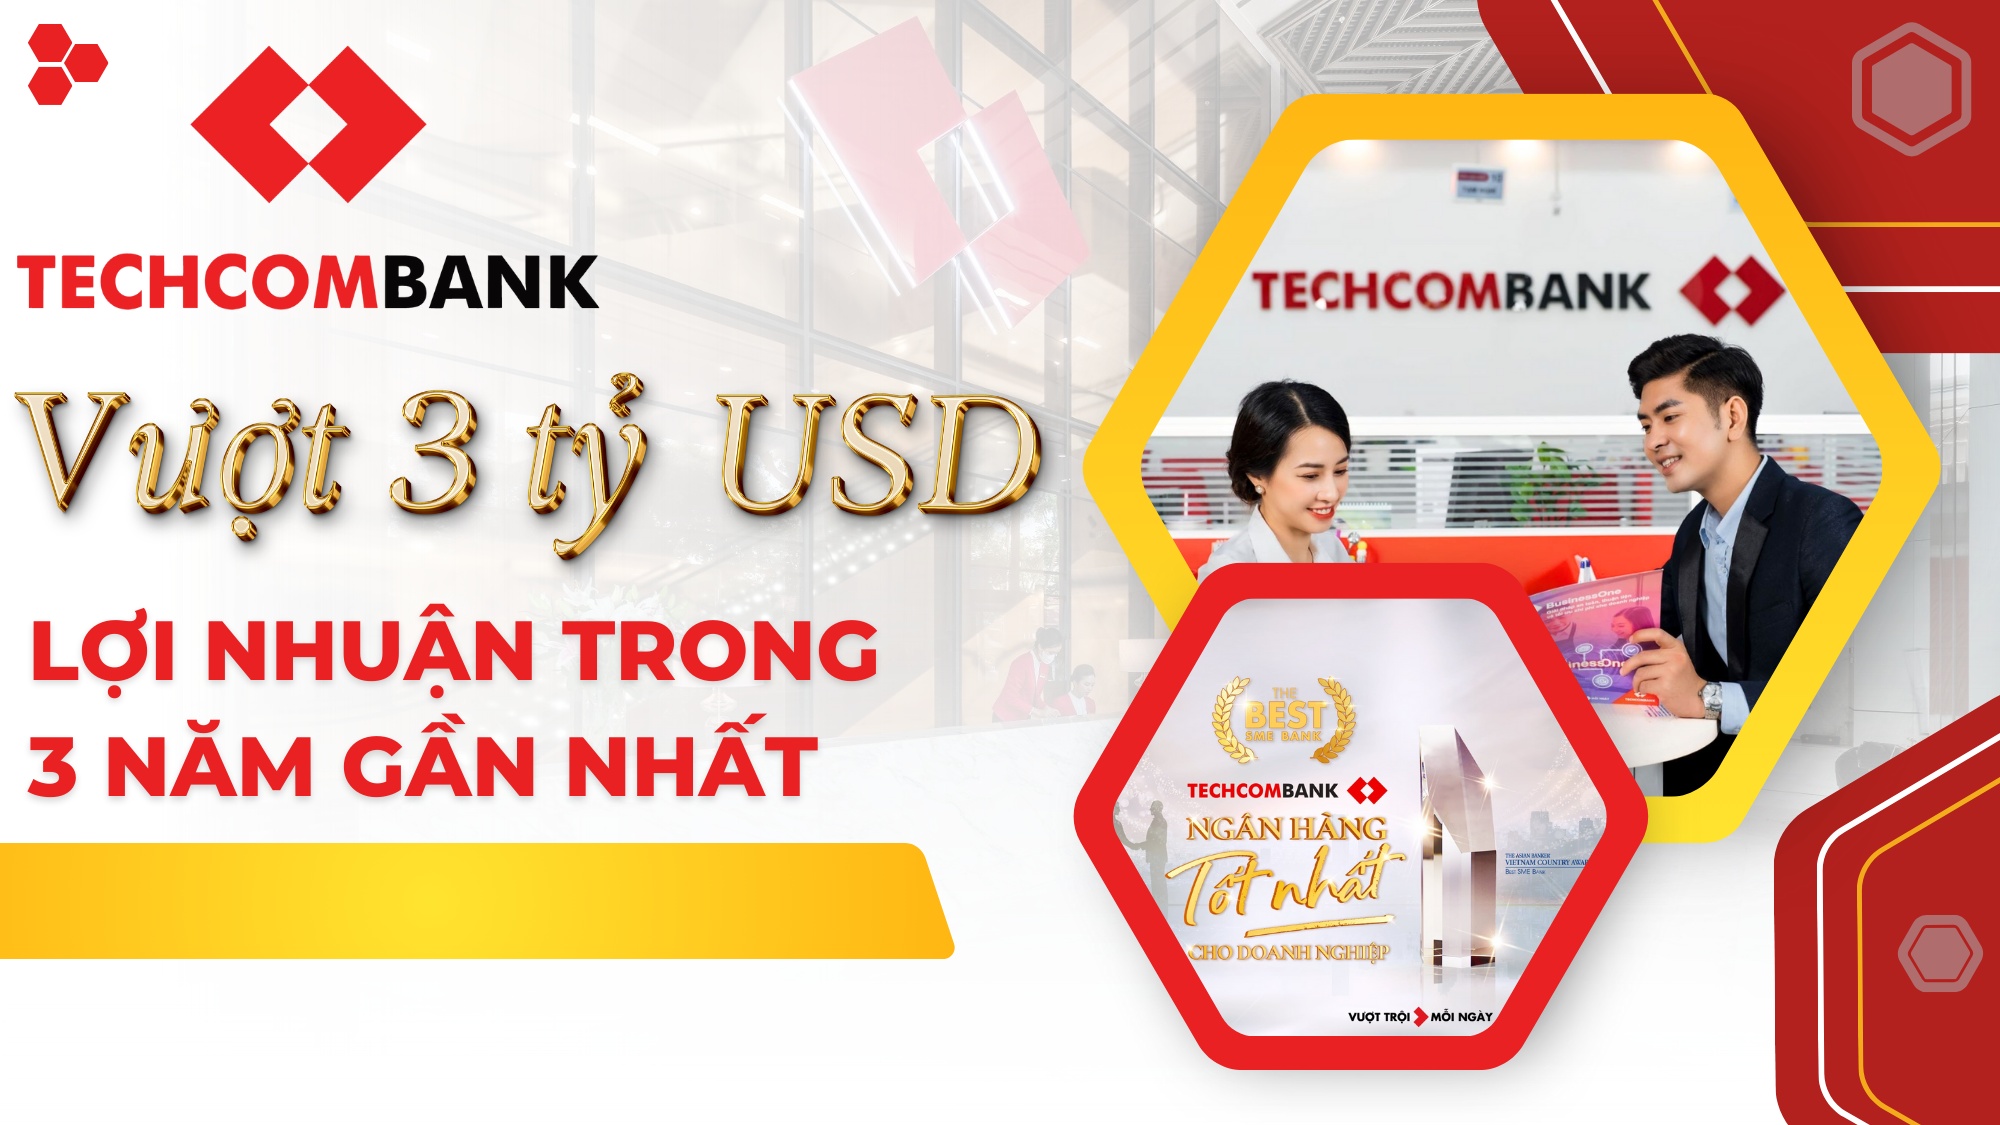 [P-magazine] Techcombank vượt 3 tỷ USD lợi nhuận trong 3 năm gần nhất